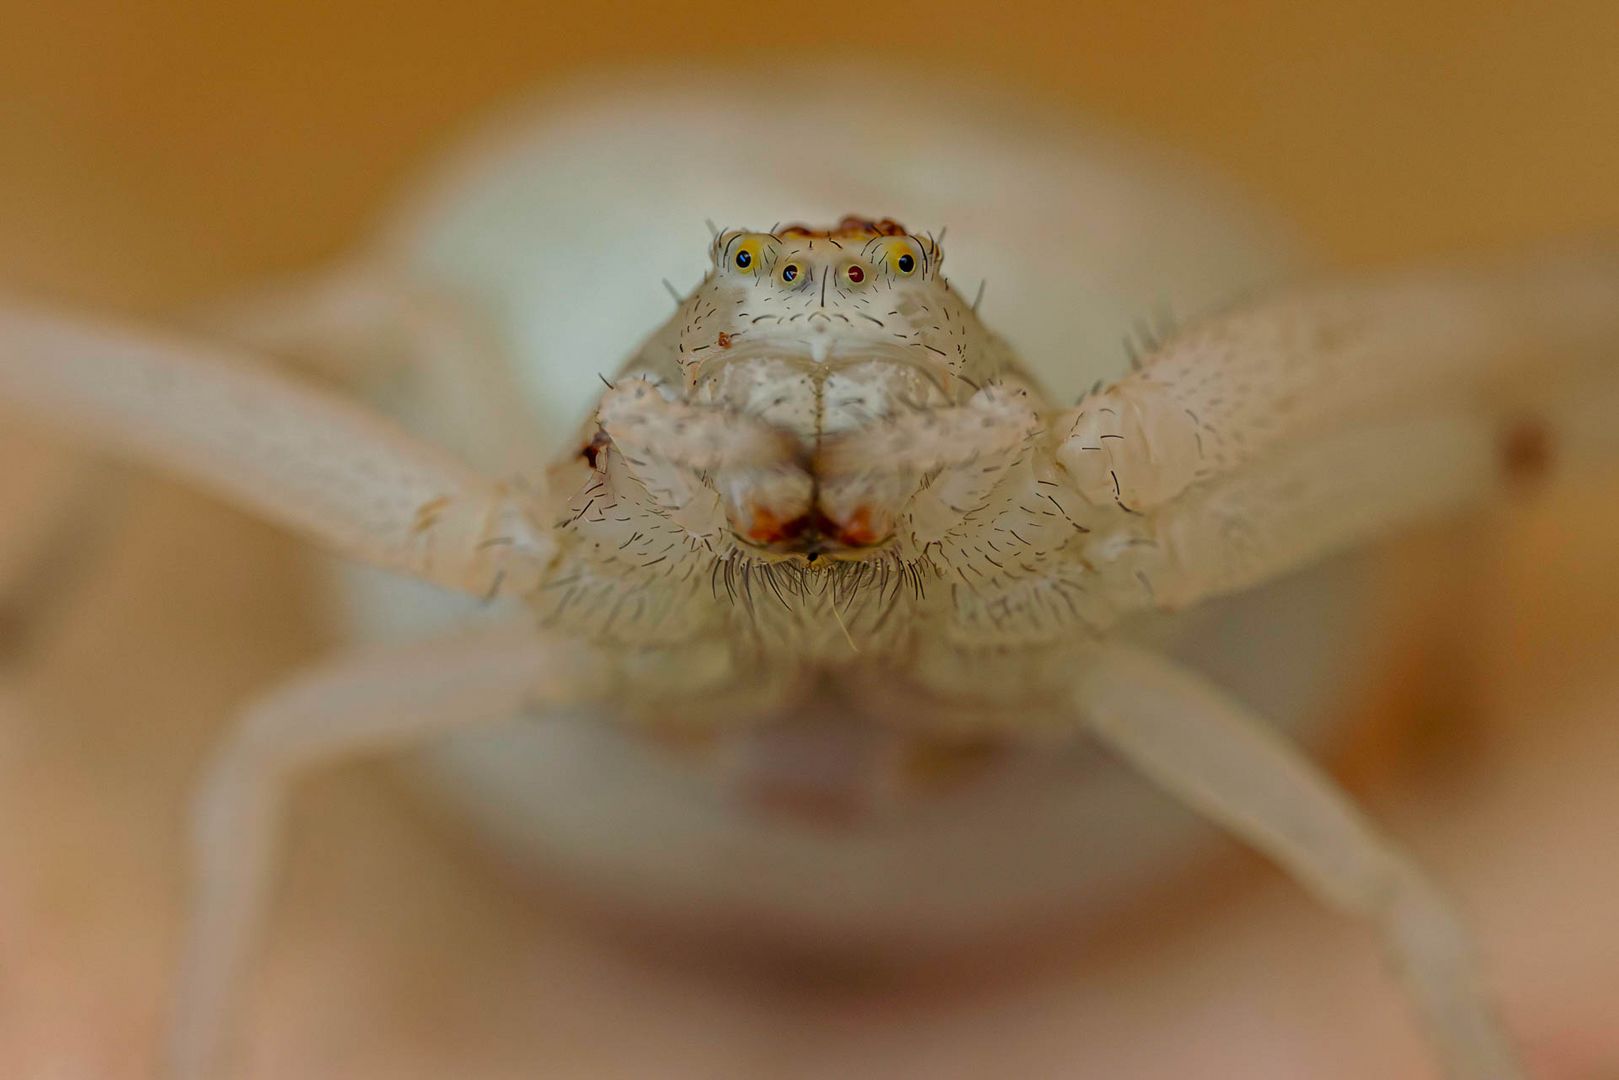 Nahaufnahme einer Veränderliche Krabbenspinne / Close-up of flower crab spider